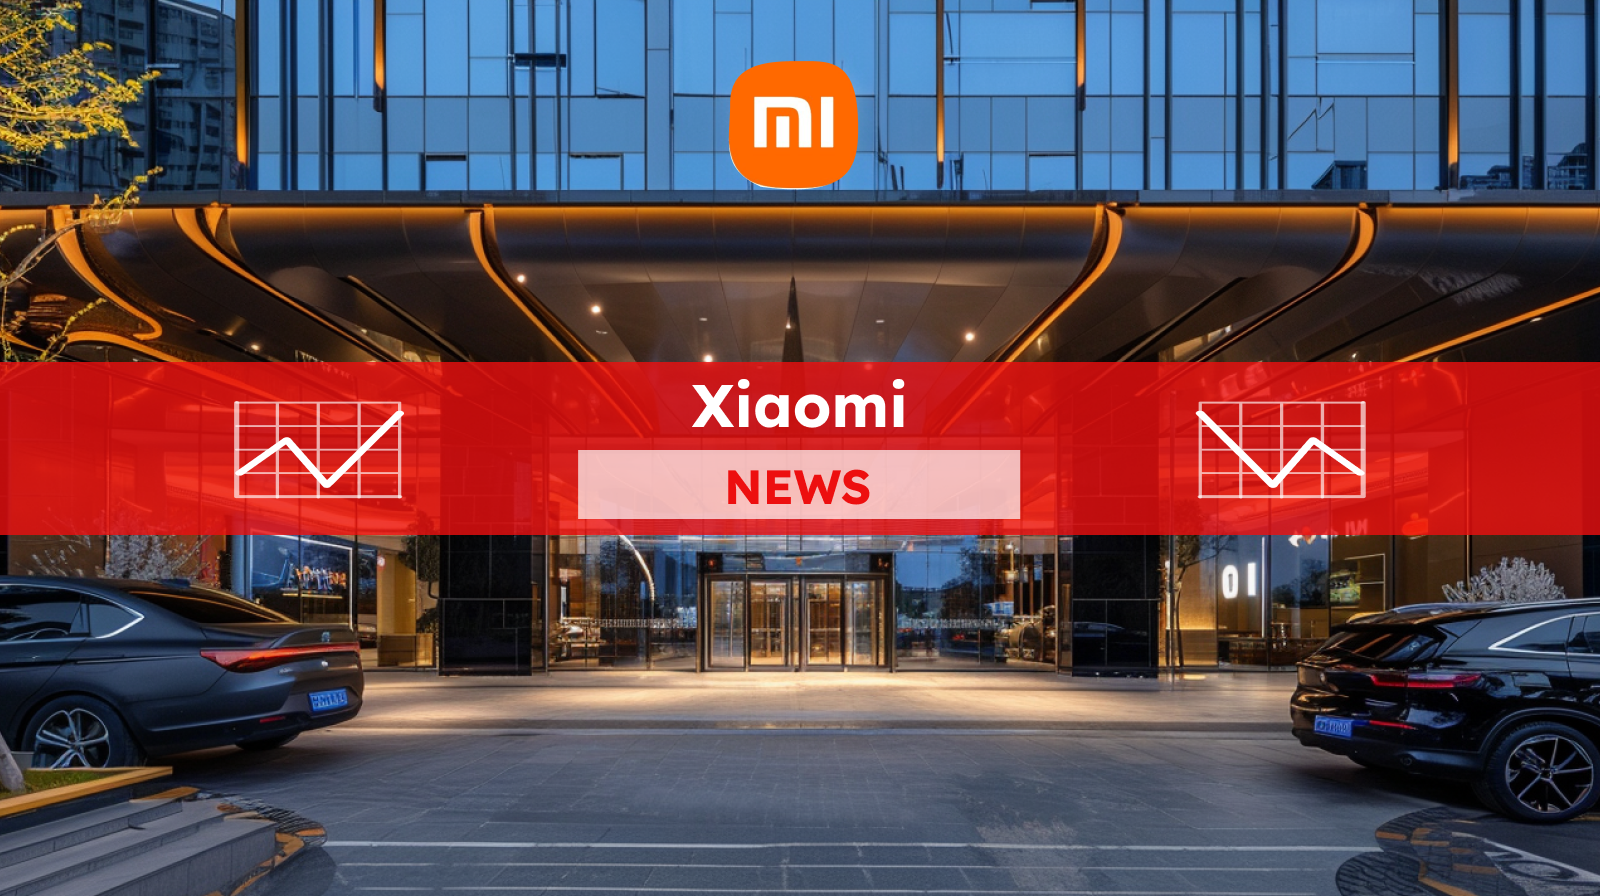 der Eingang eines modernen Gebäudes mit dem Xiaomi Logo über der Glasfront, umgeben von geparkten Autos, mit einem Xiaomi NEWS-Banner